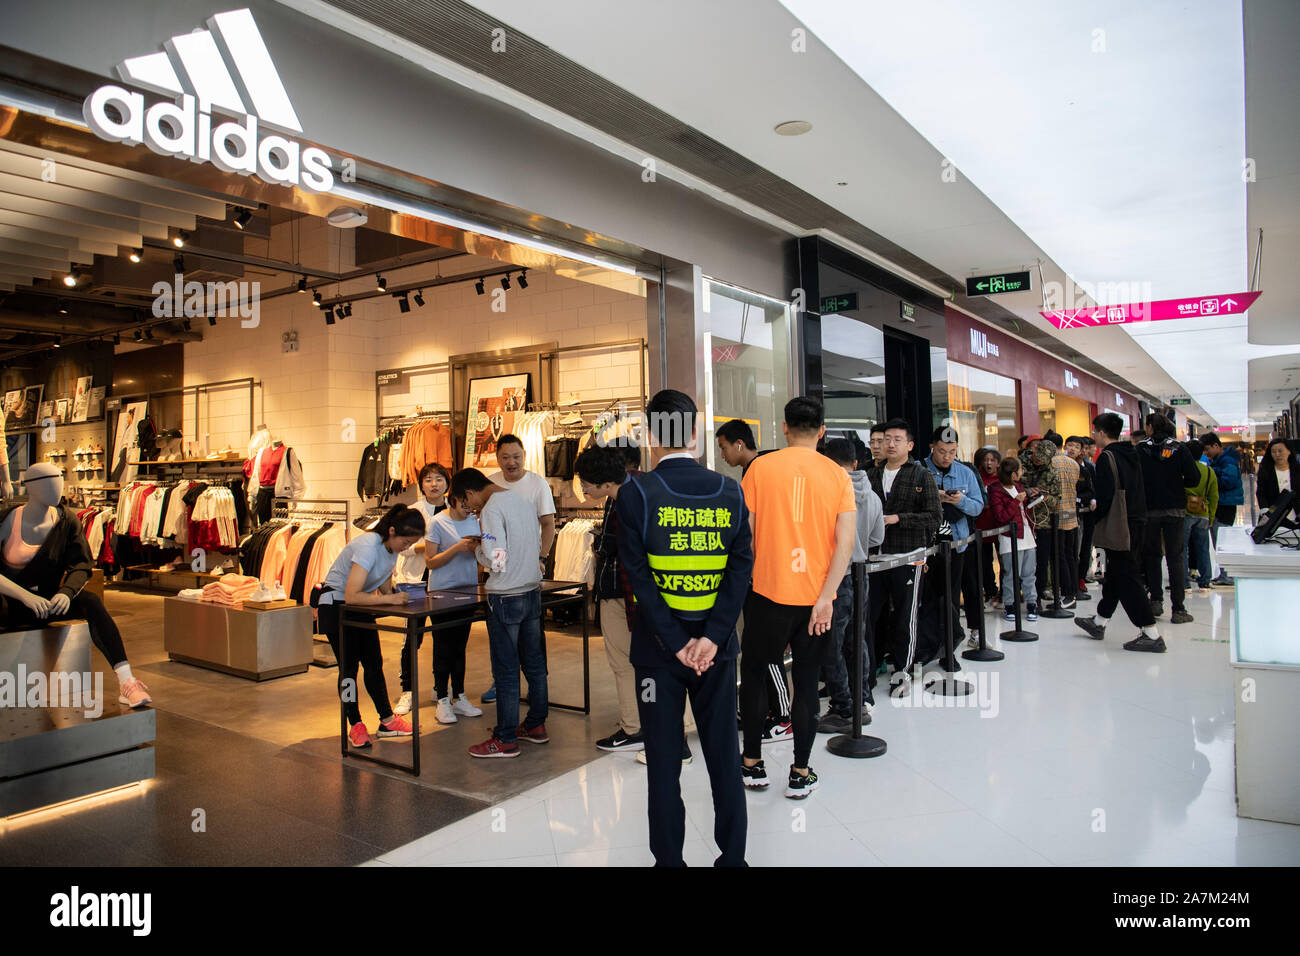 Línea de los consumidores a comprar el recién liberado Adidas Yeezy, una  colaboración entre la marca de ropa deportiva alemana Adidas y rapero  estadounidense Kanye West, en un Fotografía de stock -